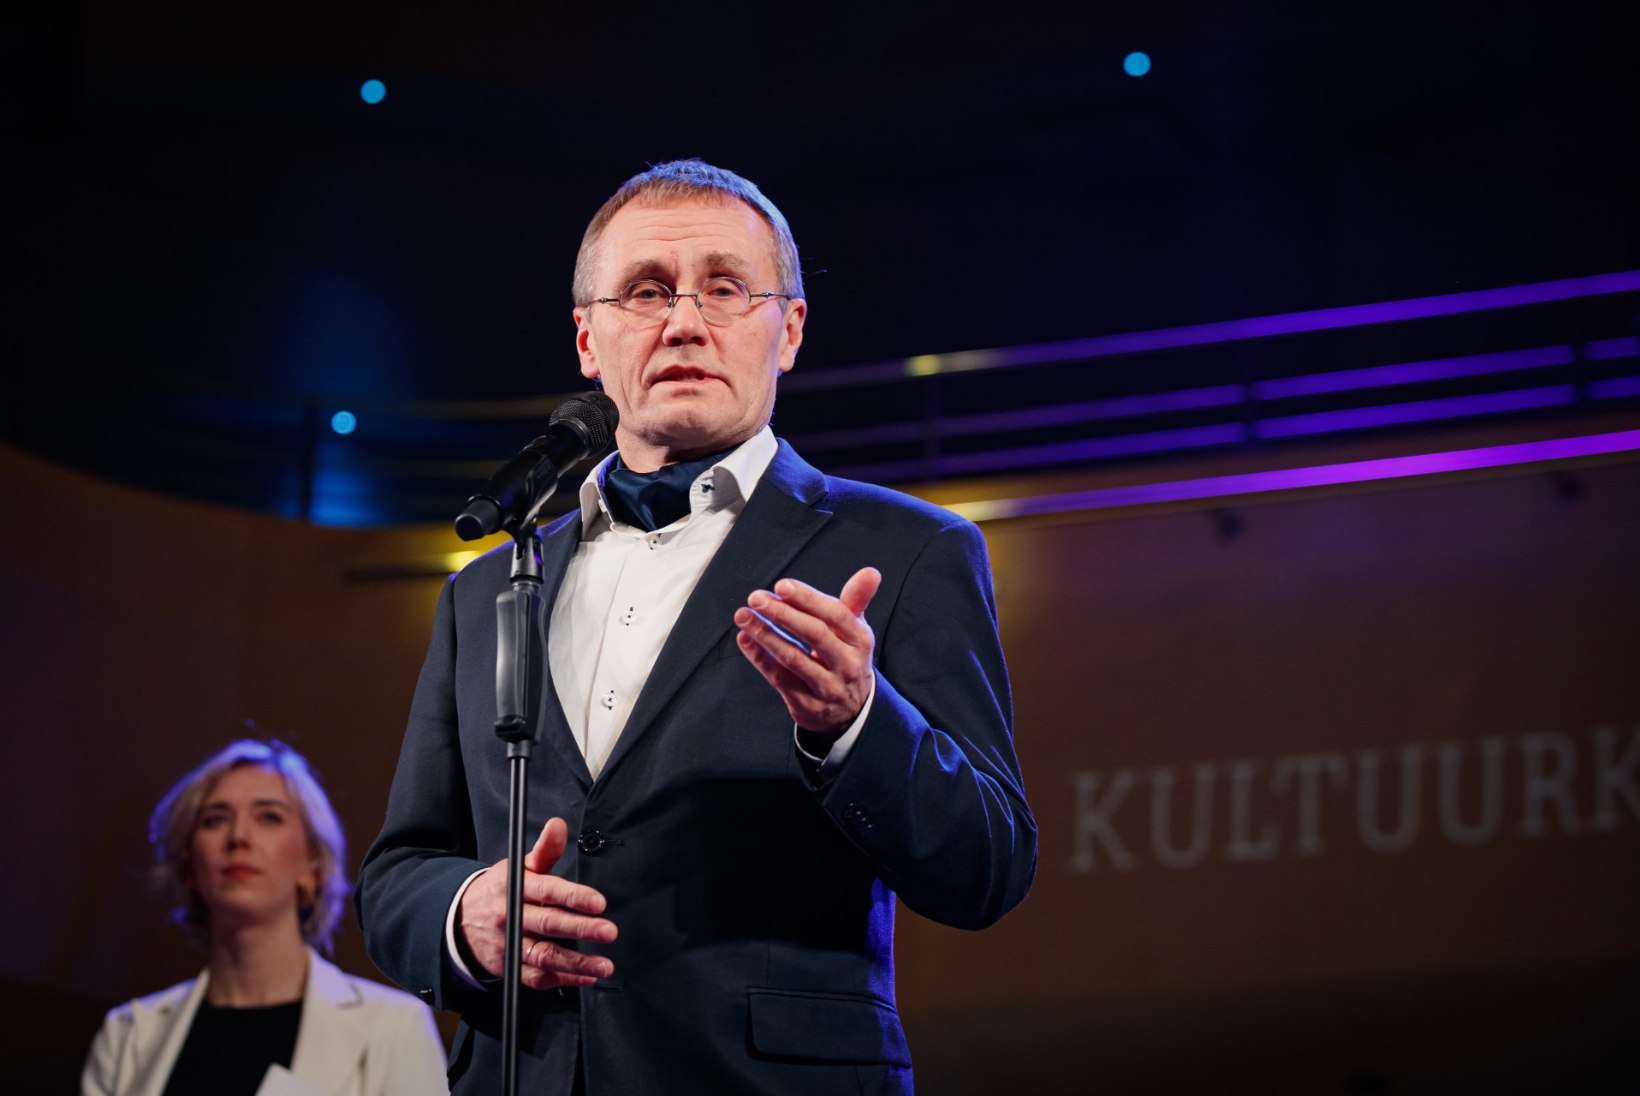 Kultuuriminister Lukas alaliidu ja Rally Estonia tülist: kana arvab, et on tähtsam kui muna